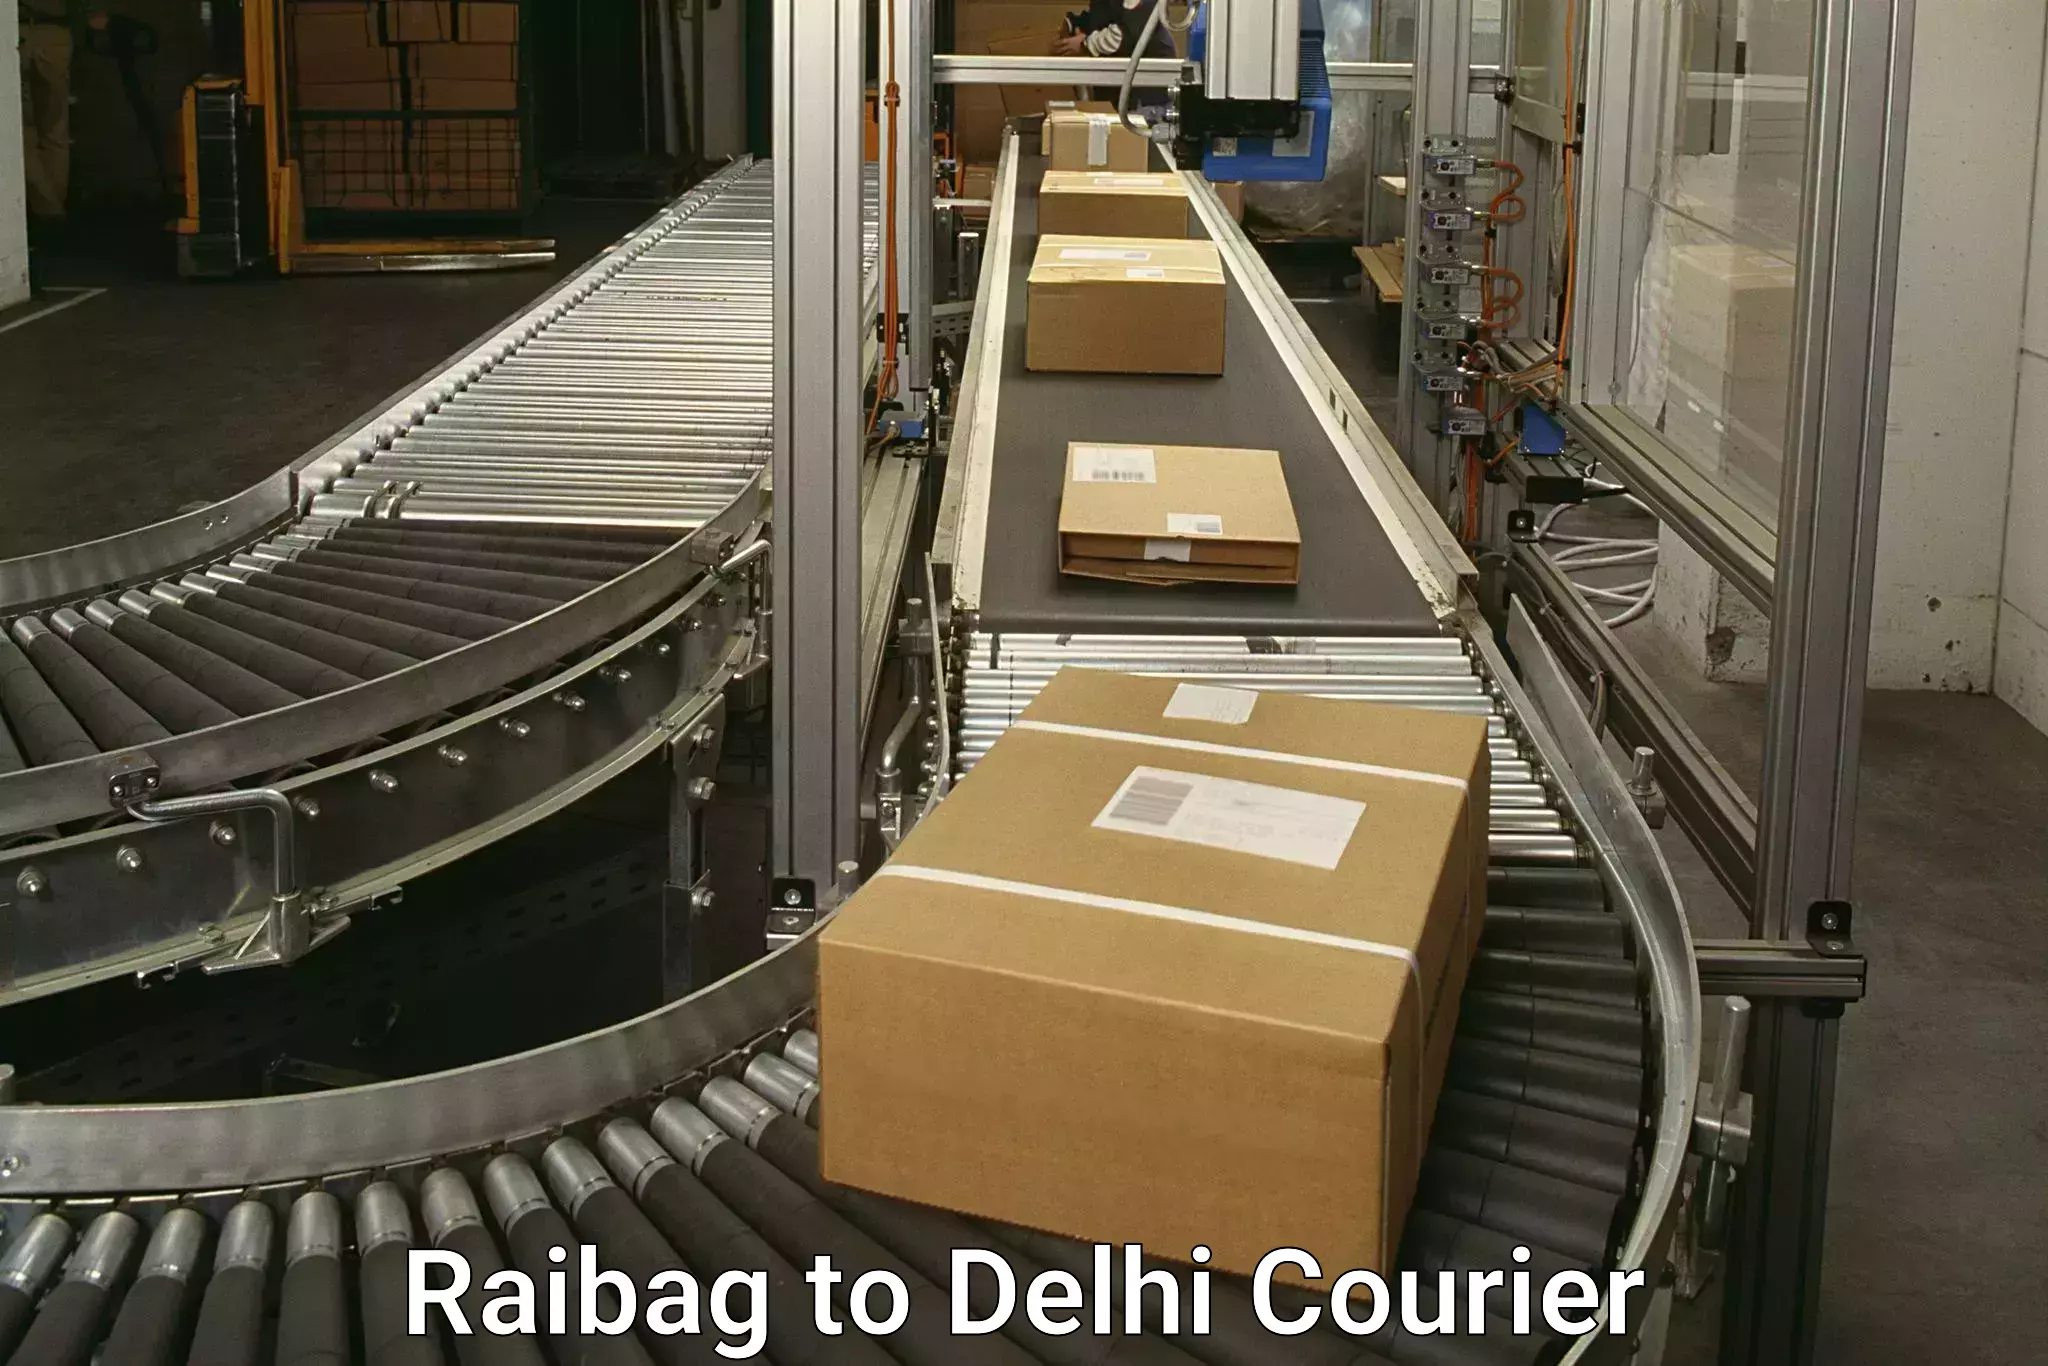 24-hour courier service Raibag to Delhi